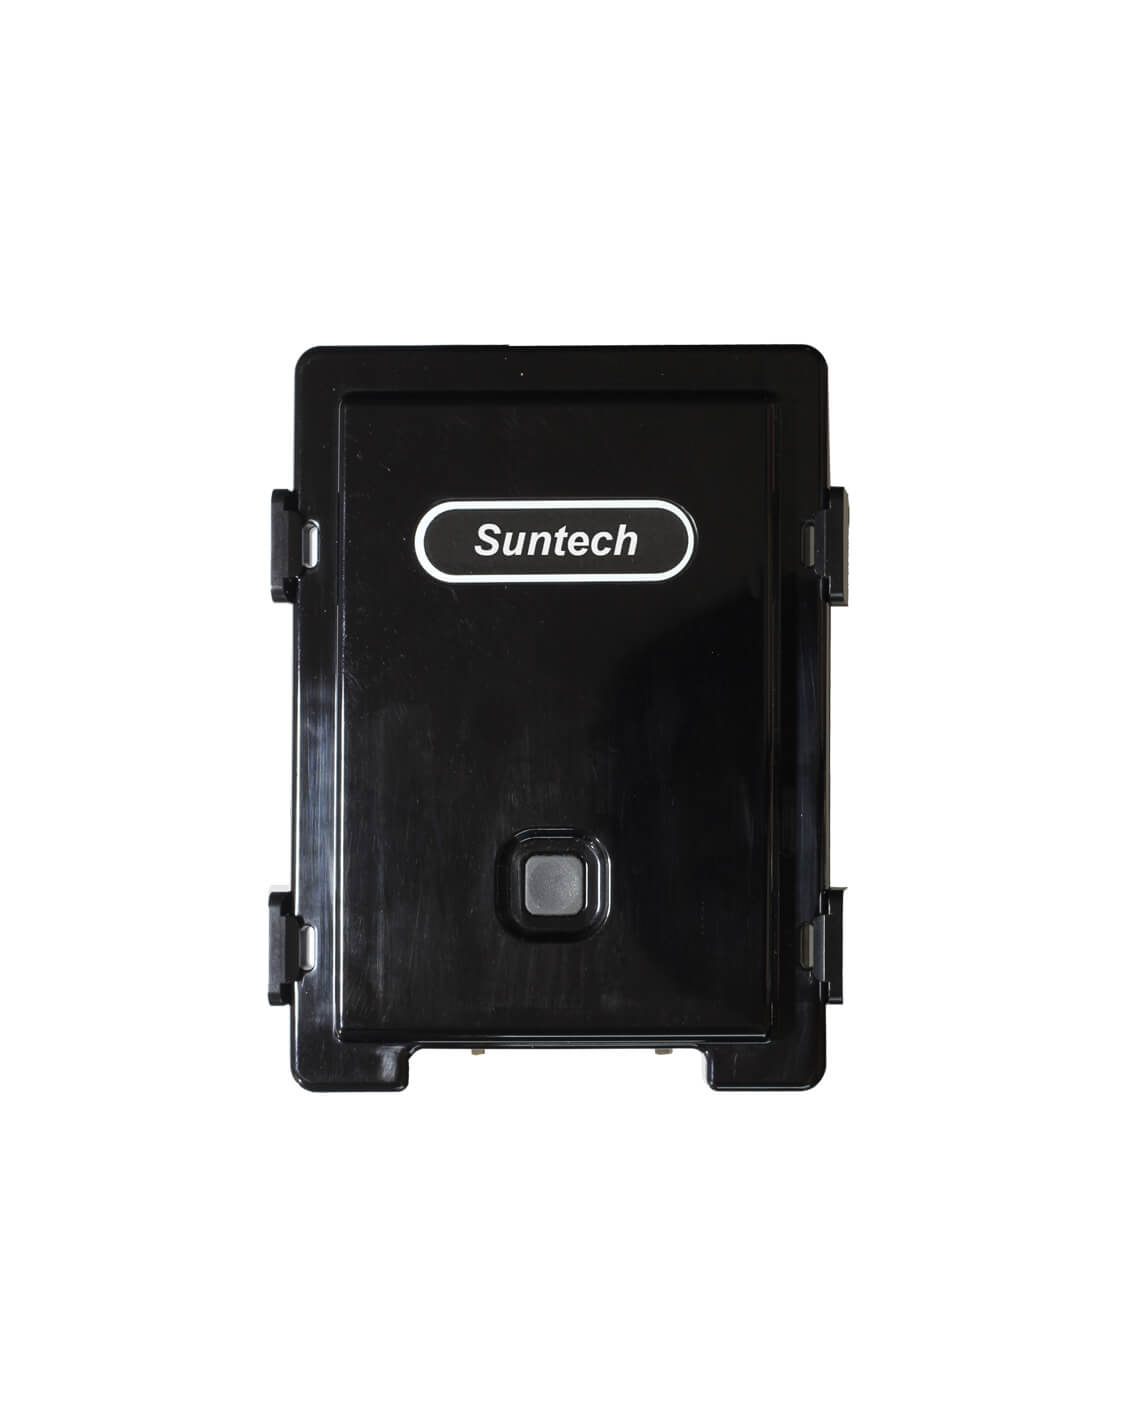 Suntech ST3330A GPS tracker